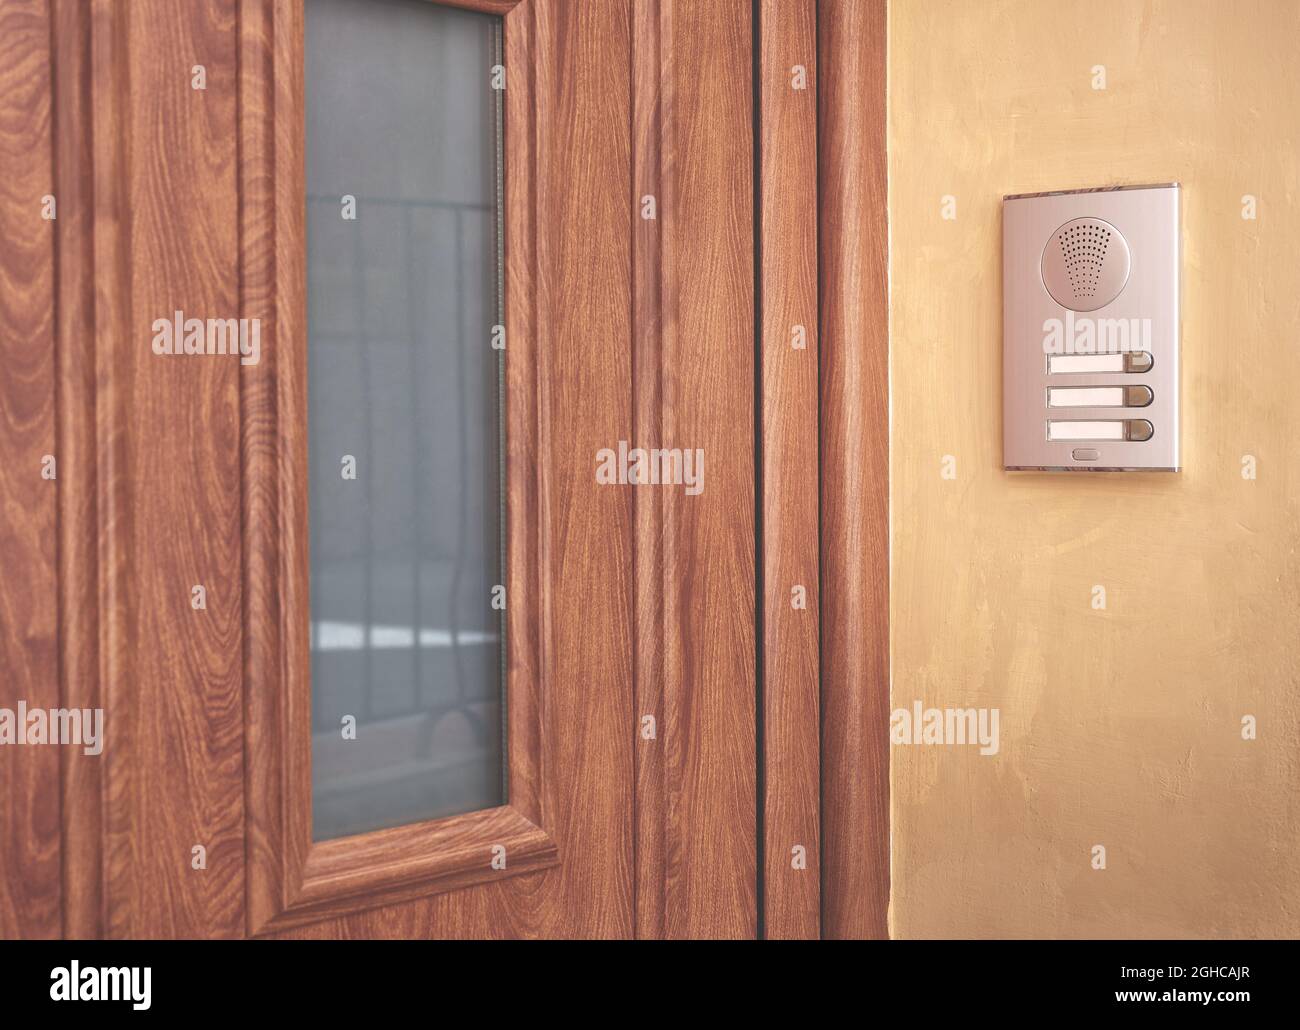 detalle de una puerta de entrada marrón con interfono en pared de estuco Foto de stock